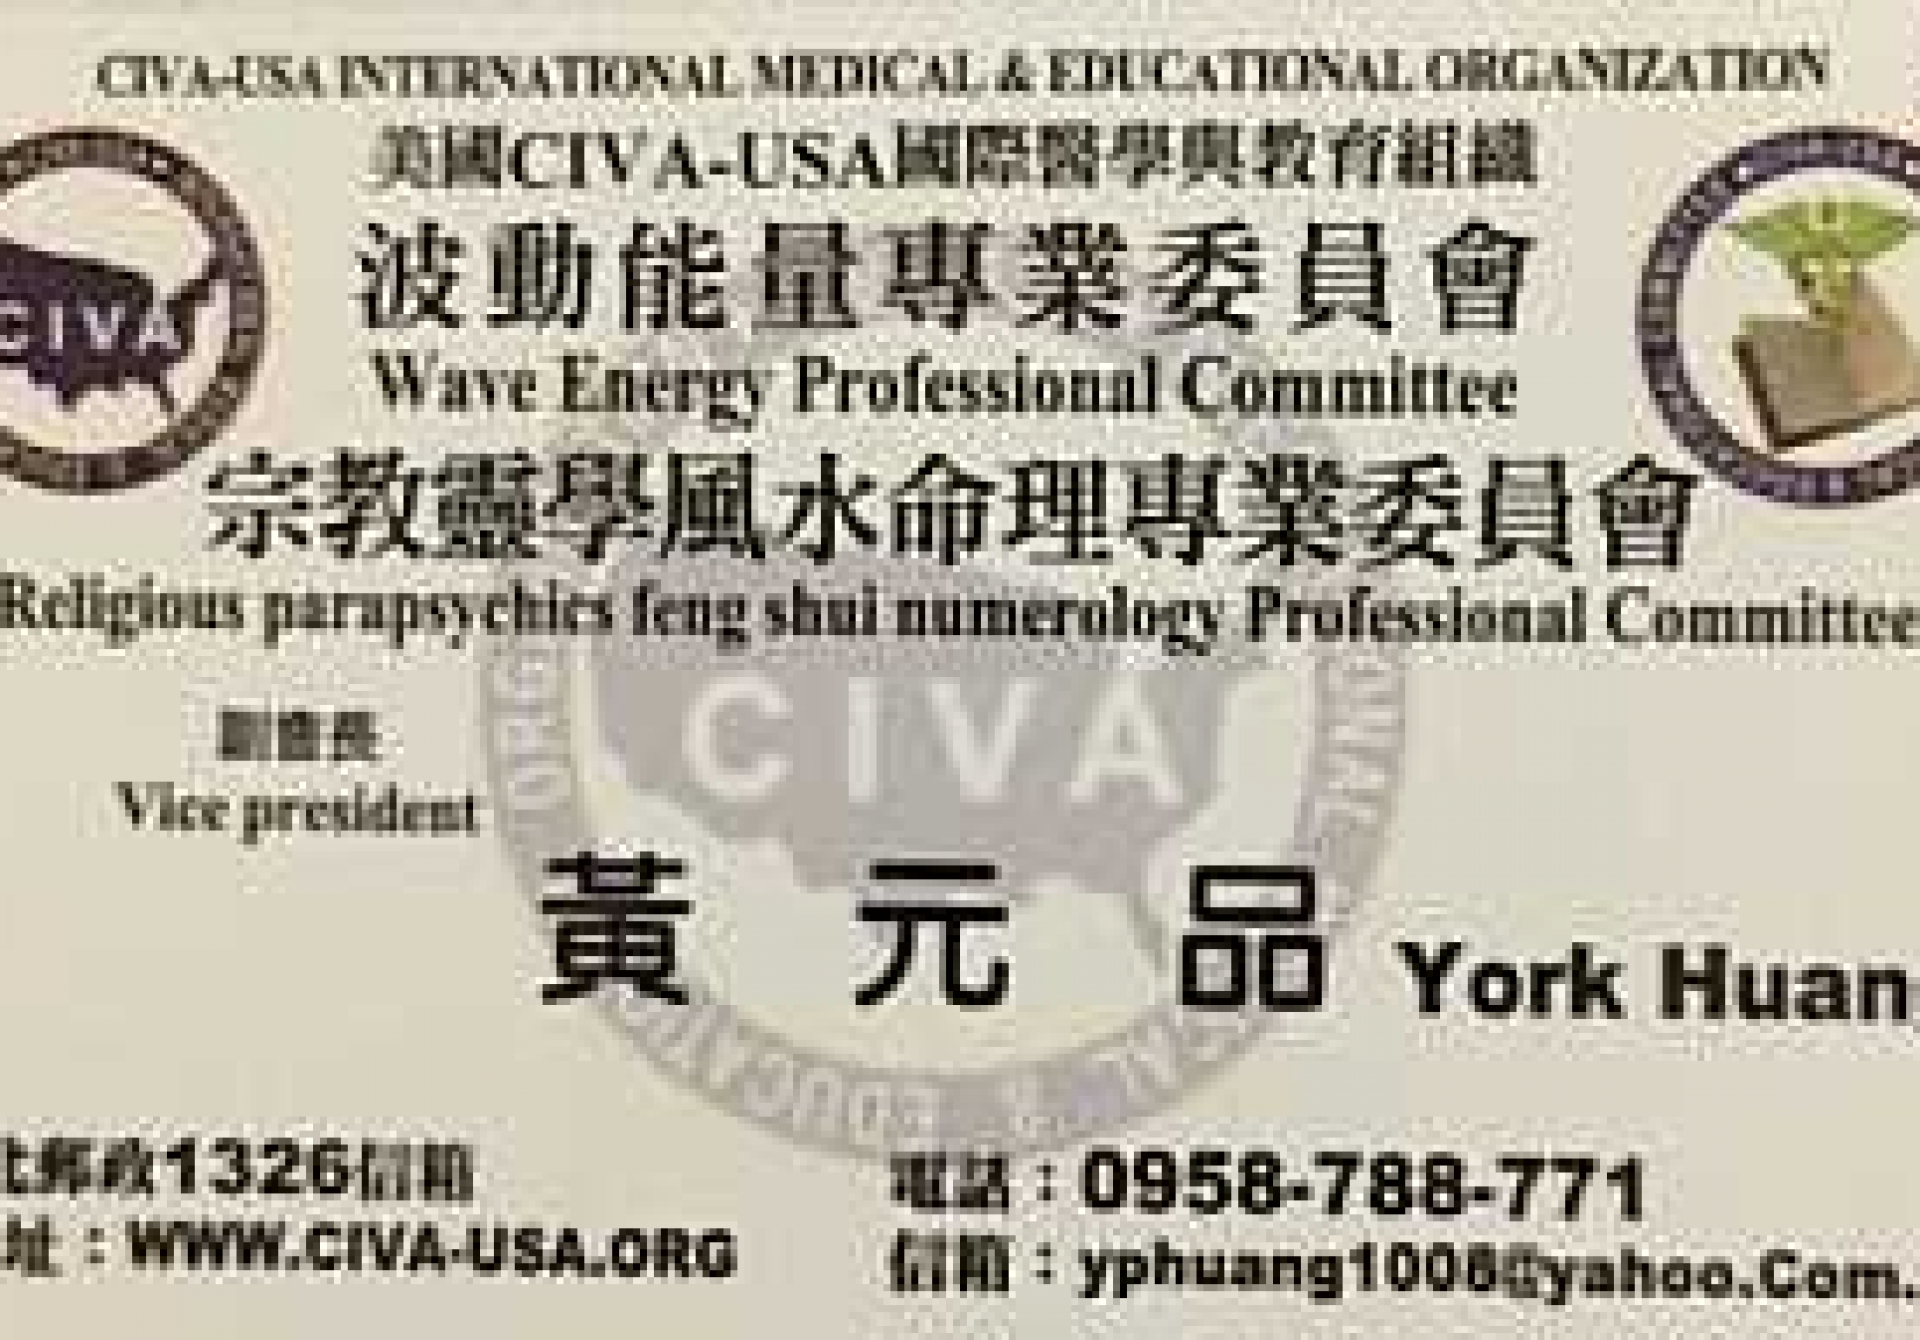 恭賀! 黃元品醫師為美國NGO機構CIVA-USA國際醫學與教育組織 副會長!